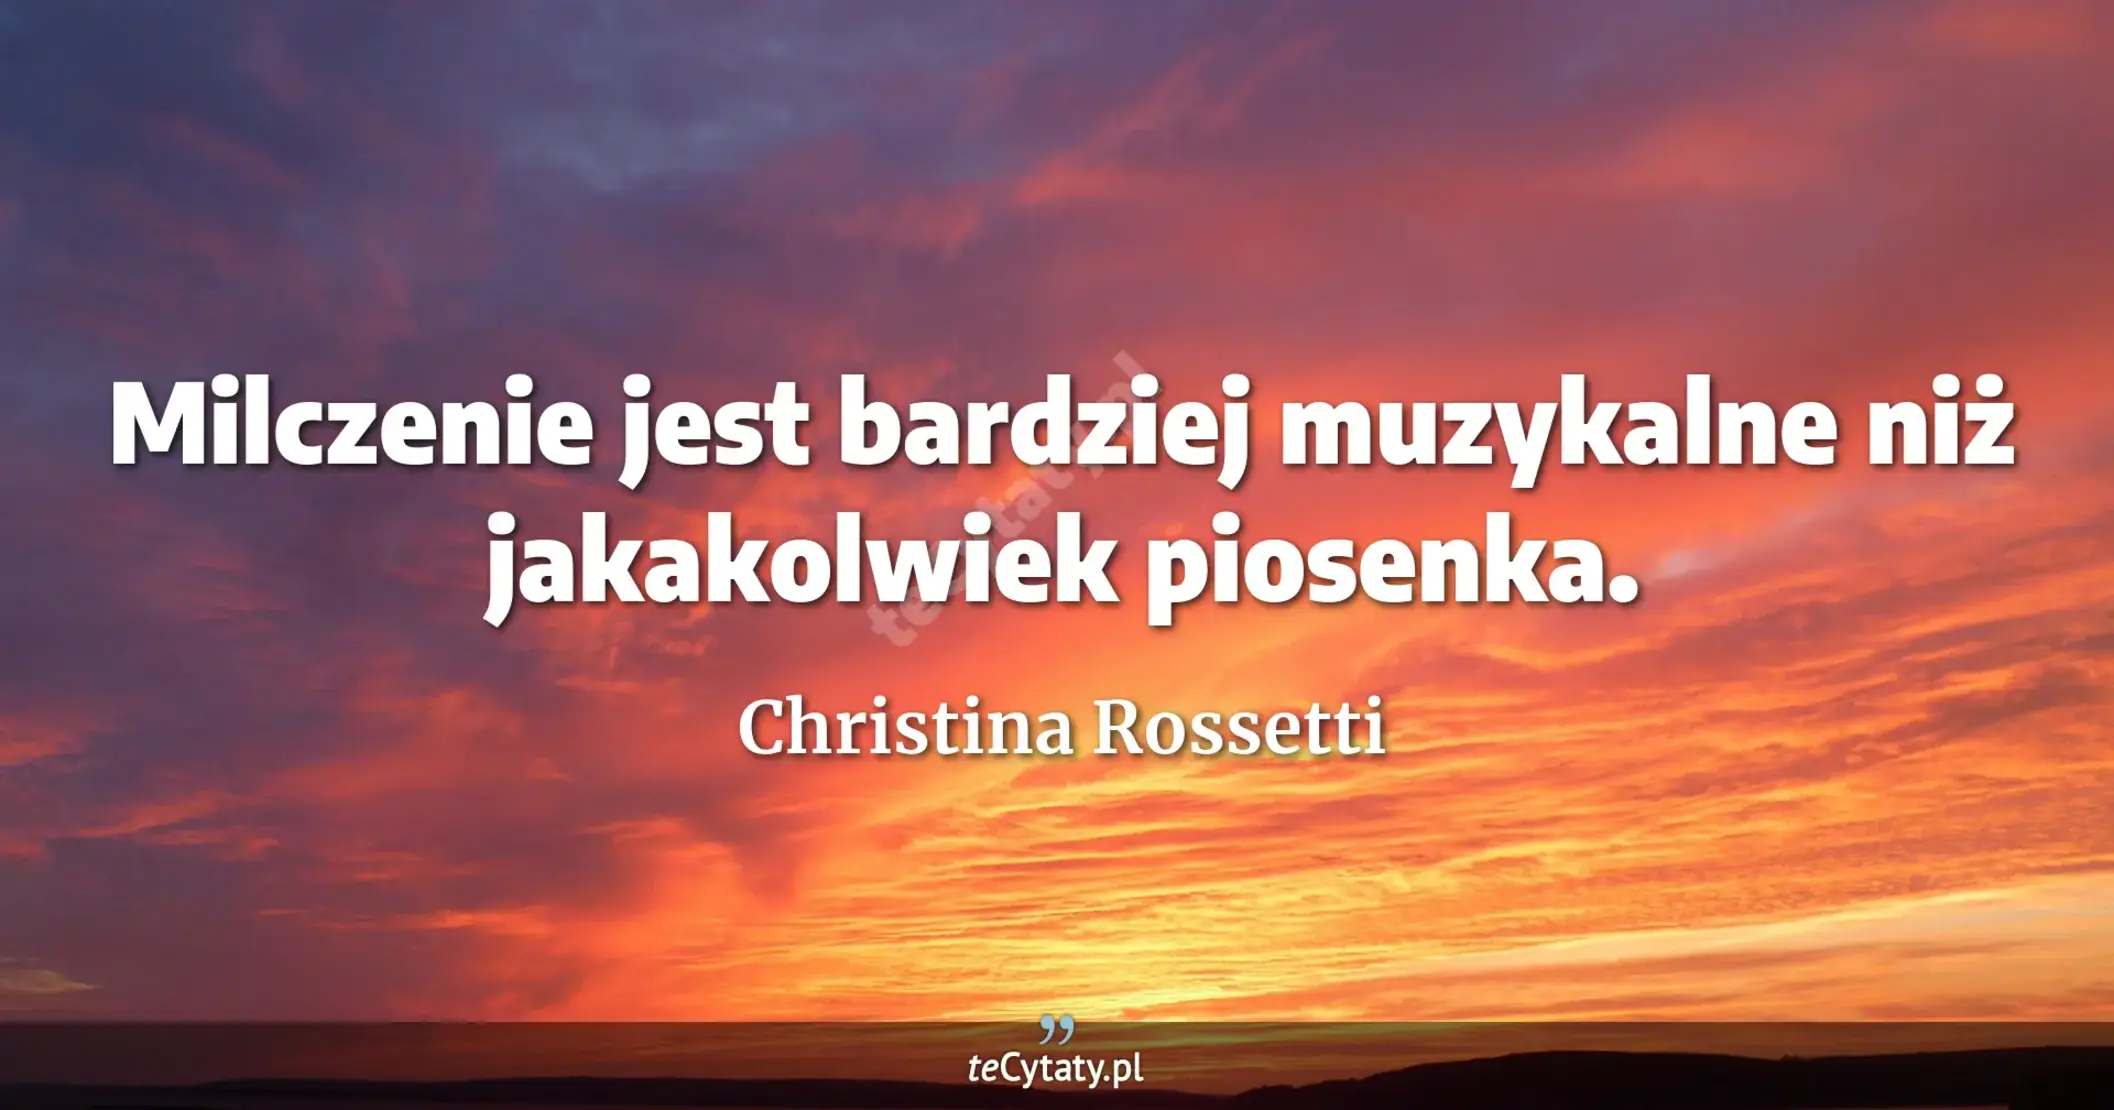 Milczenie jest bardziej muzykalne niż jakakolwiek piosenka. - Christina Rossetti